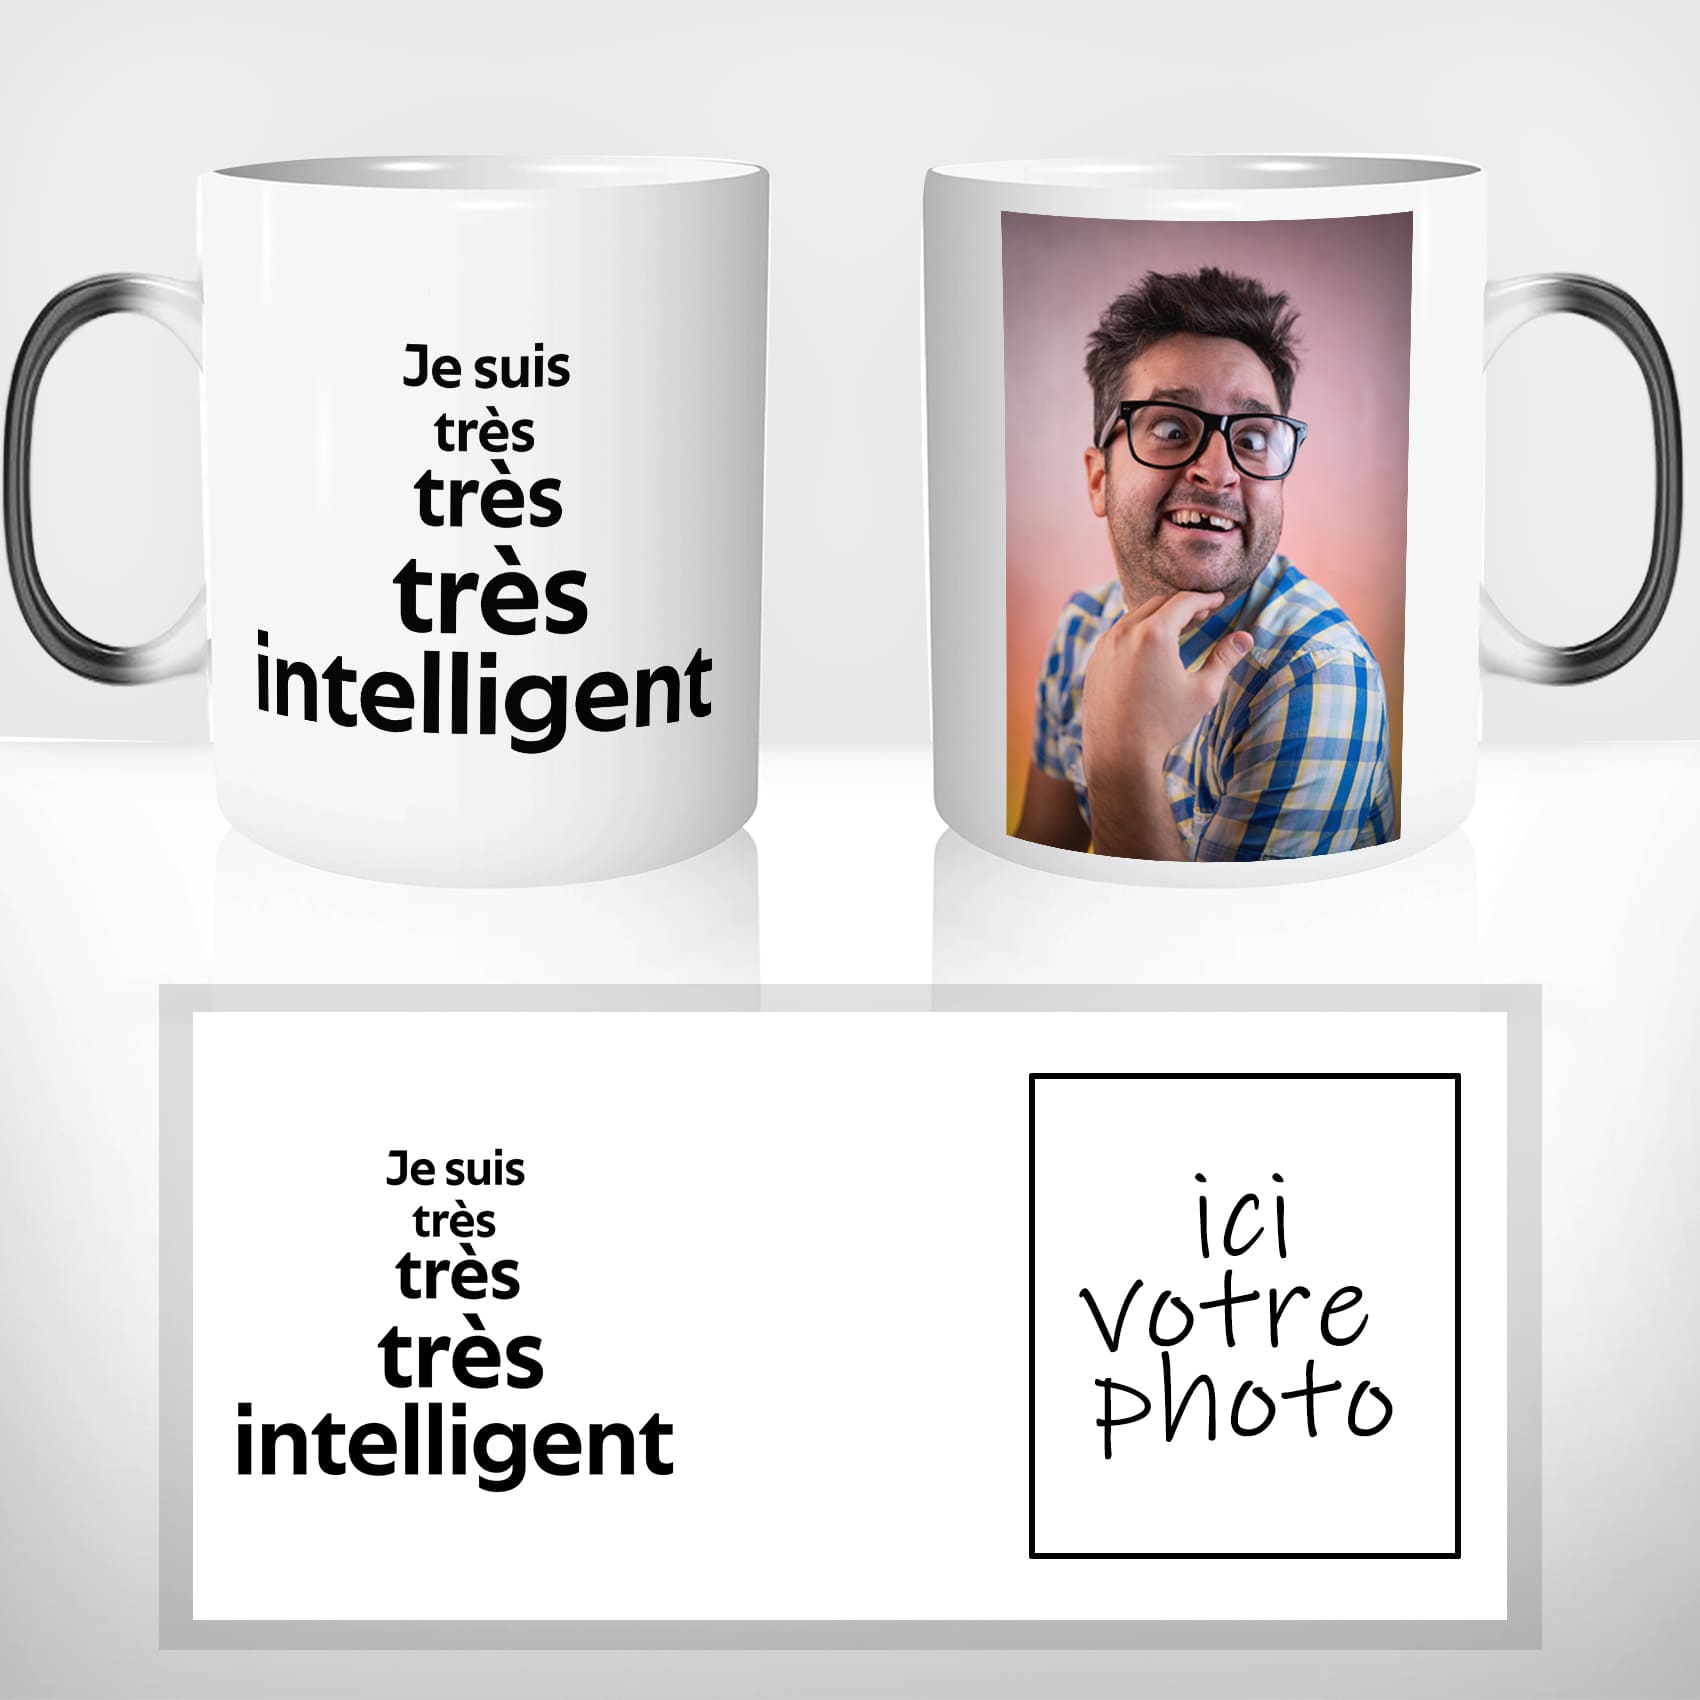 mug-magique-tasse-magic-thermo-reactif-chauffant-meme-je-suis-tres-intelligent-aroufhomme-photo-personnalisable-internet-fun-cadeau-2